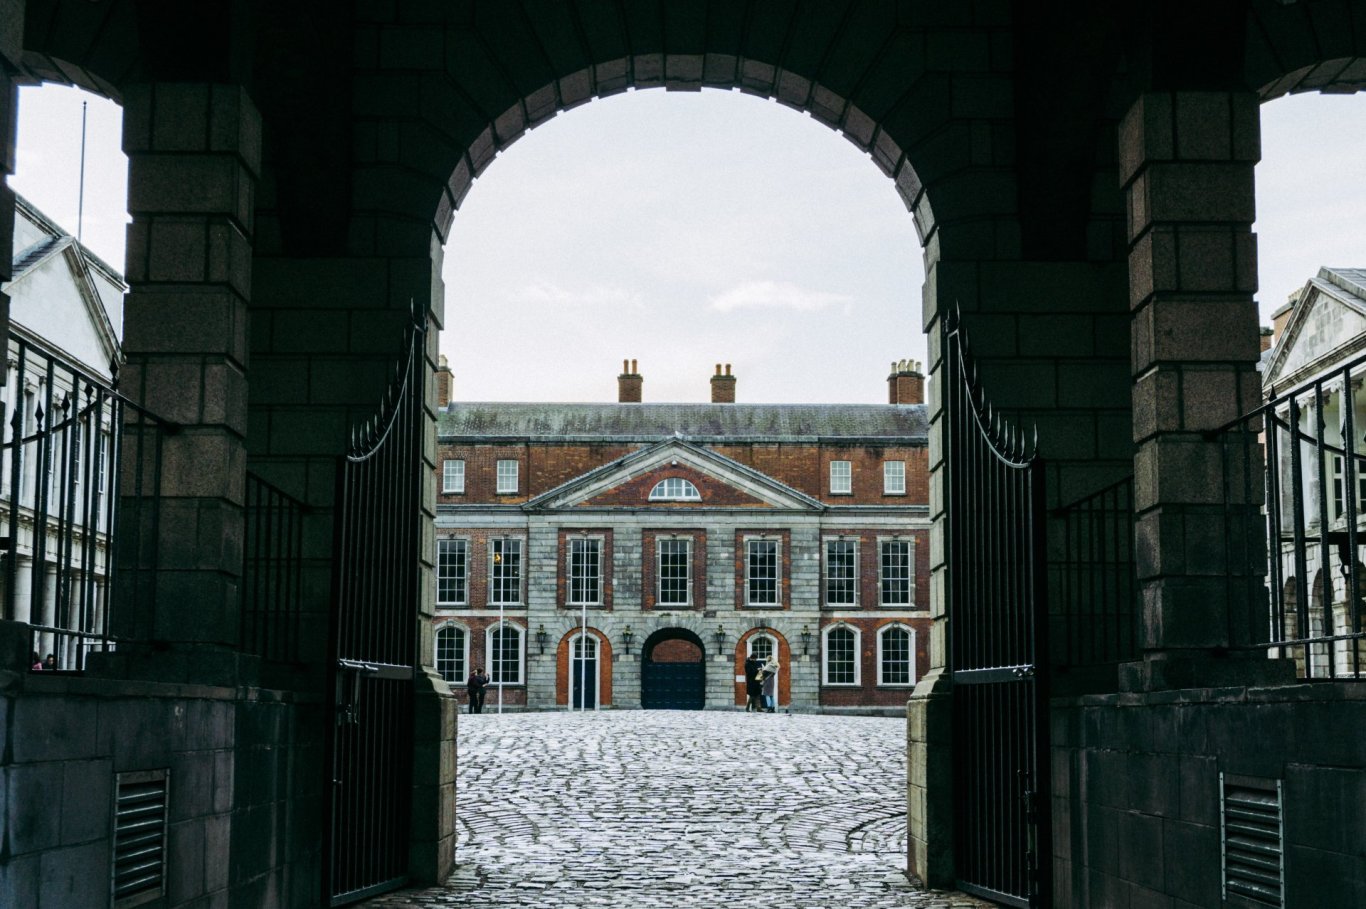 Dublin castle courtyard through arch view